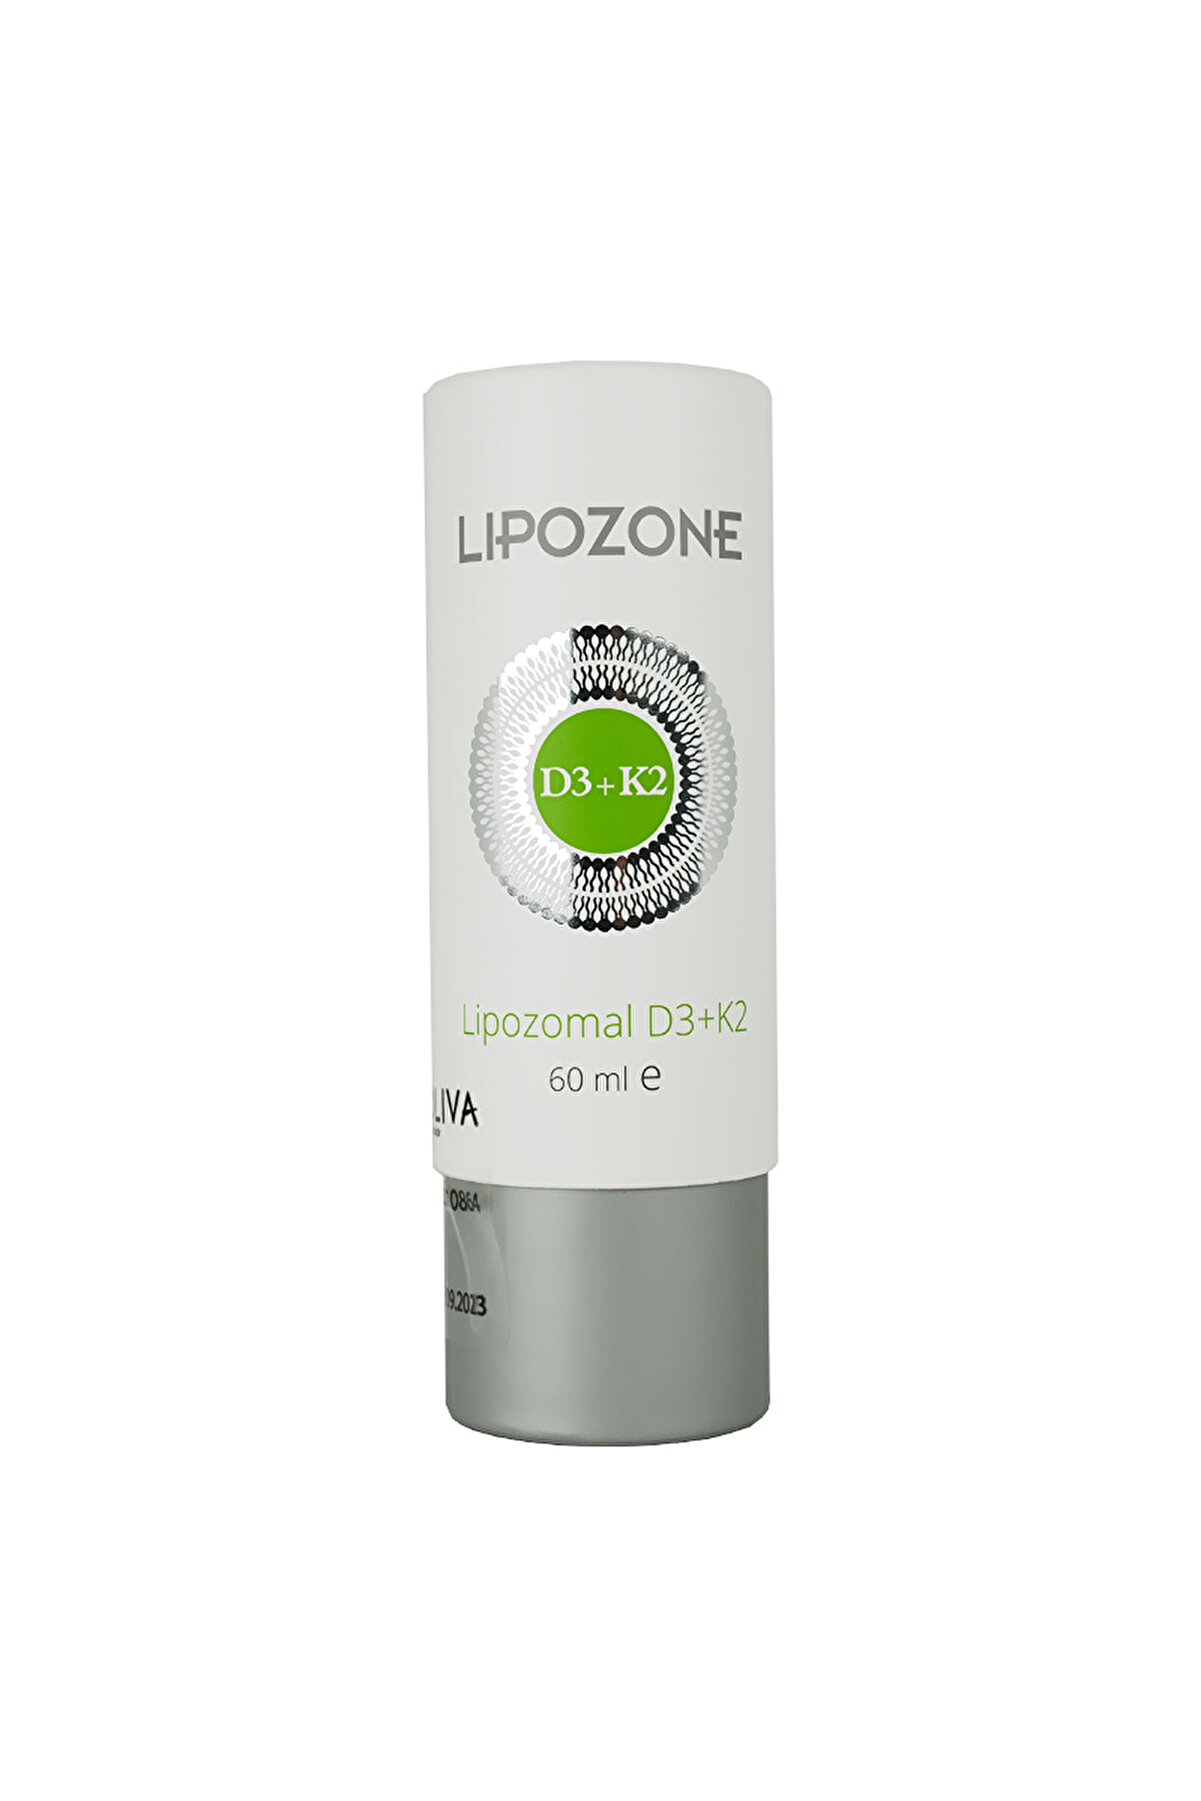 Lipozone Lipozomal D3 K2 Vitamini 60 ml